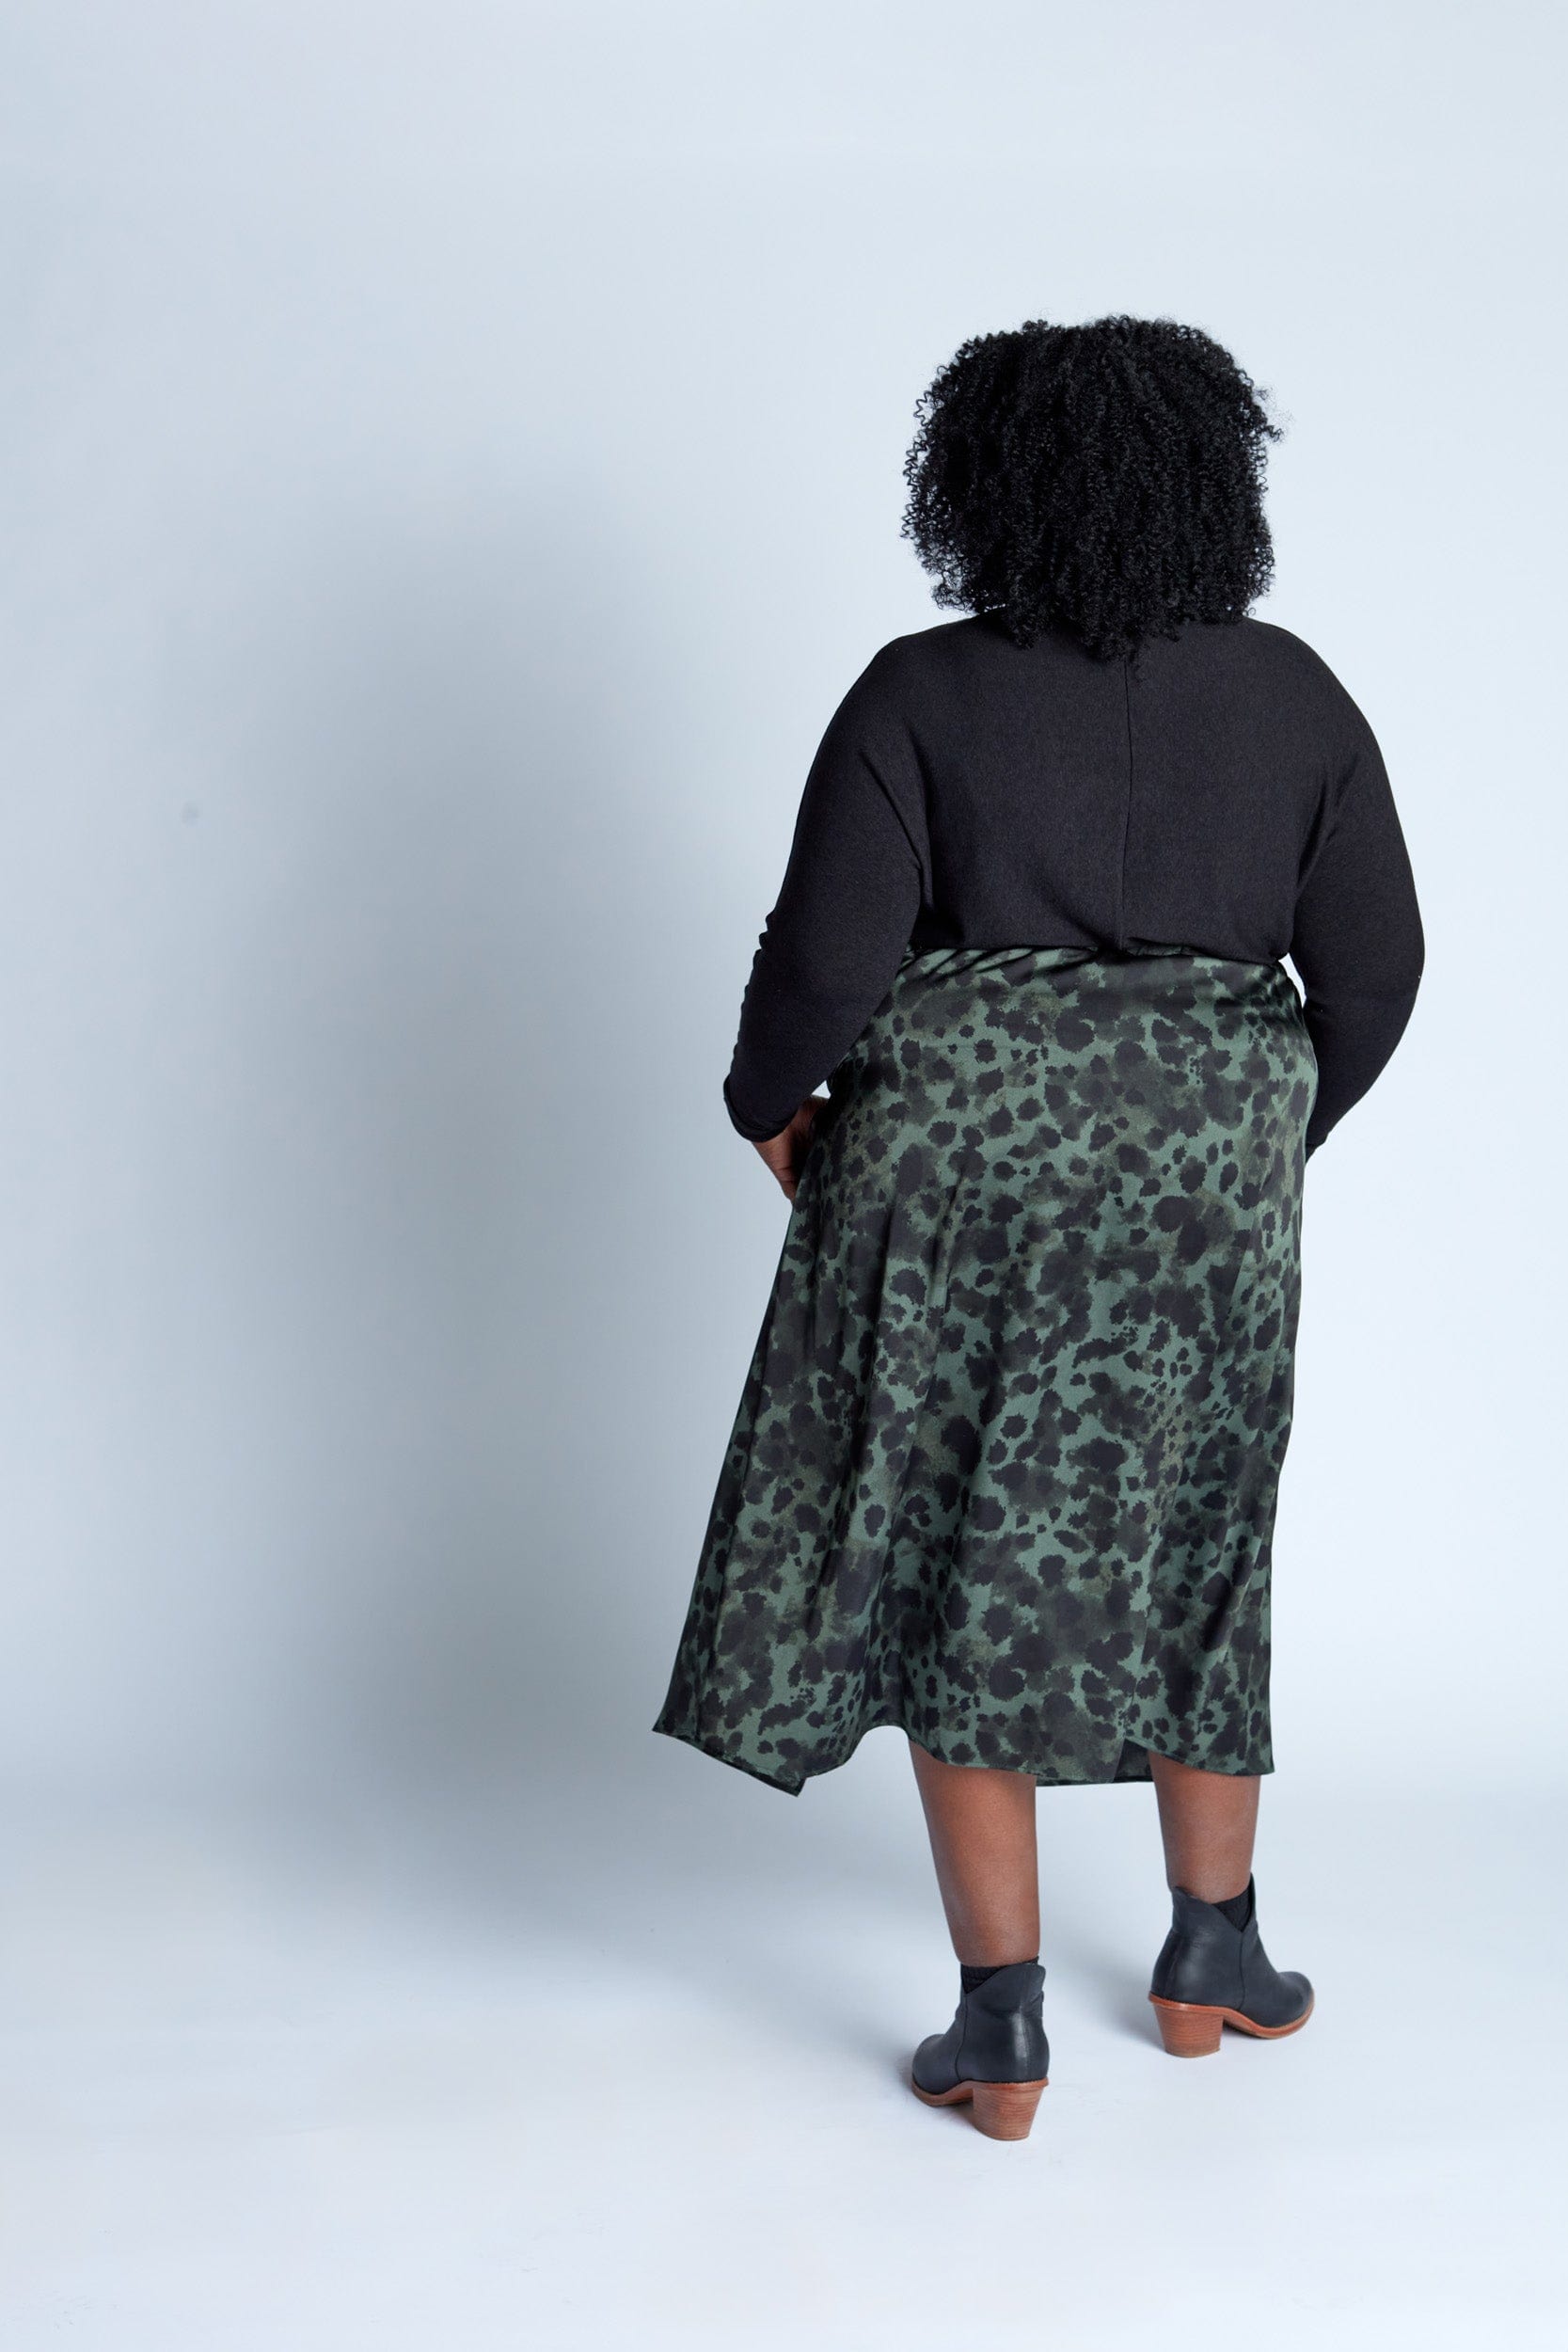 Satin Skirt in Lush Splatter Print